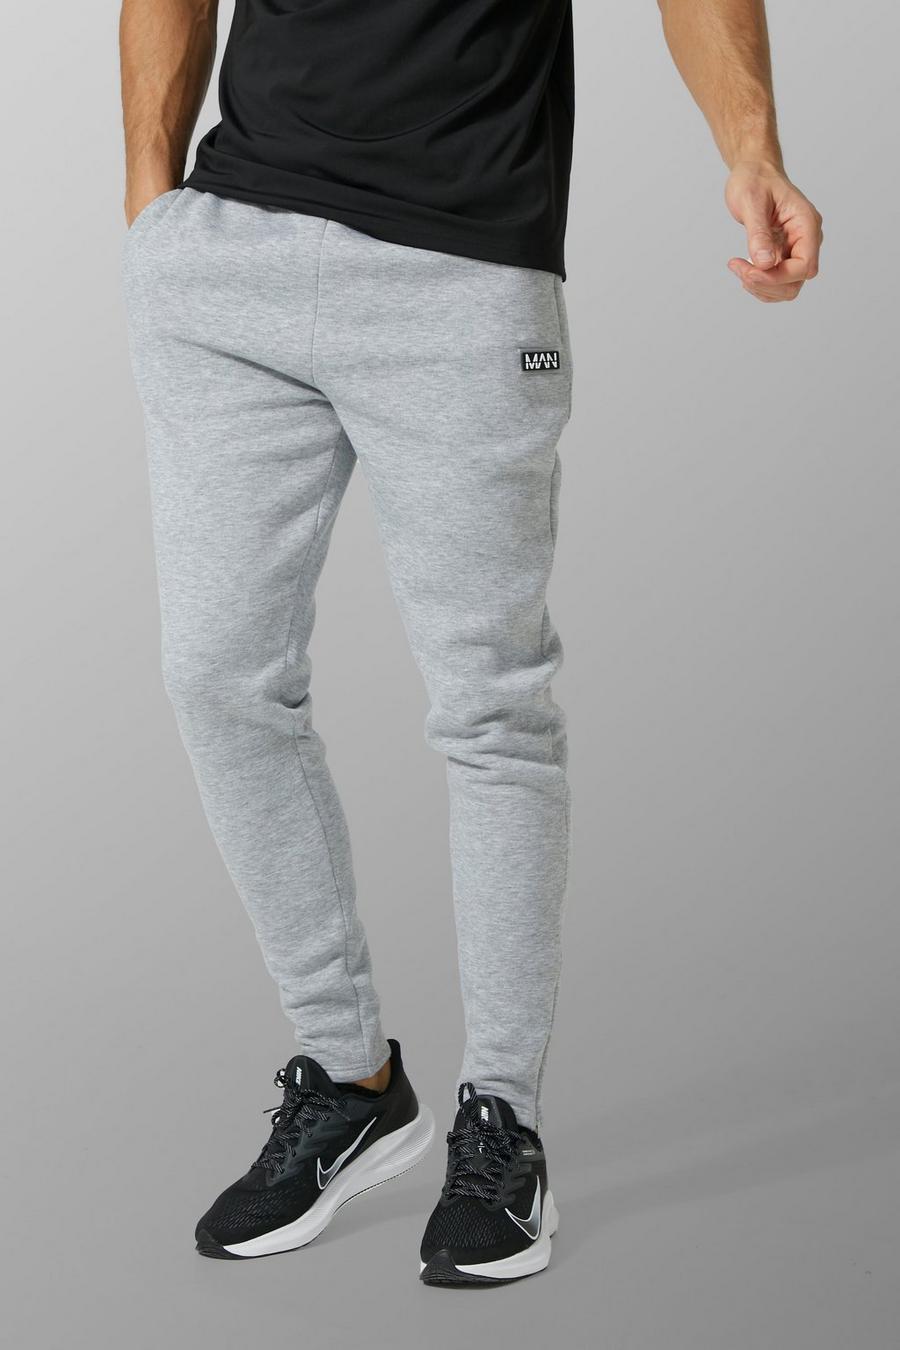 סלע אפור gris מכנסי ריצה ספורטיביים לאימונים עם כיתוב Man, לגברים גבוהים